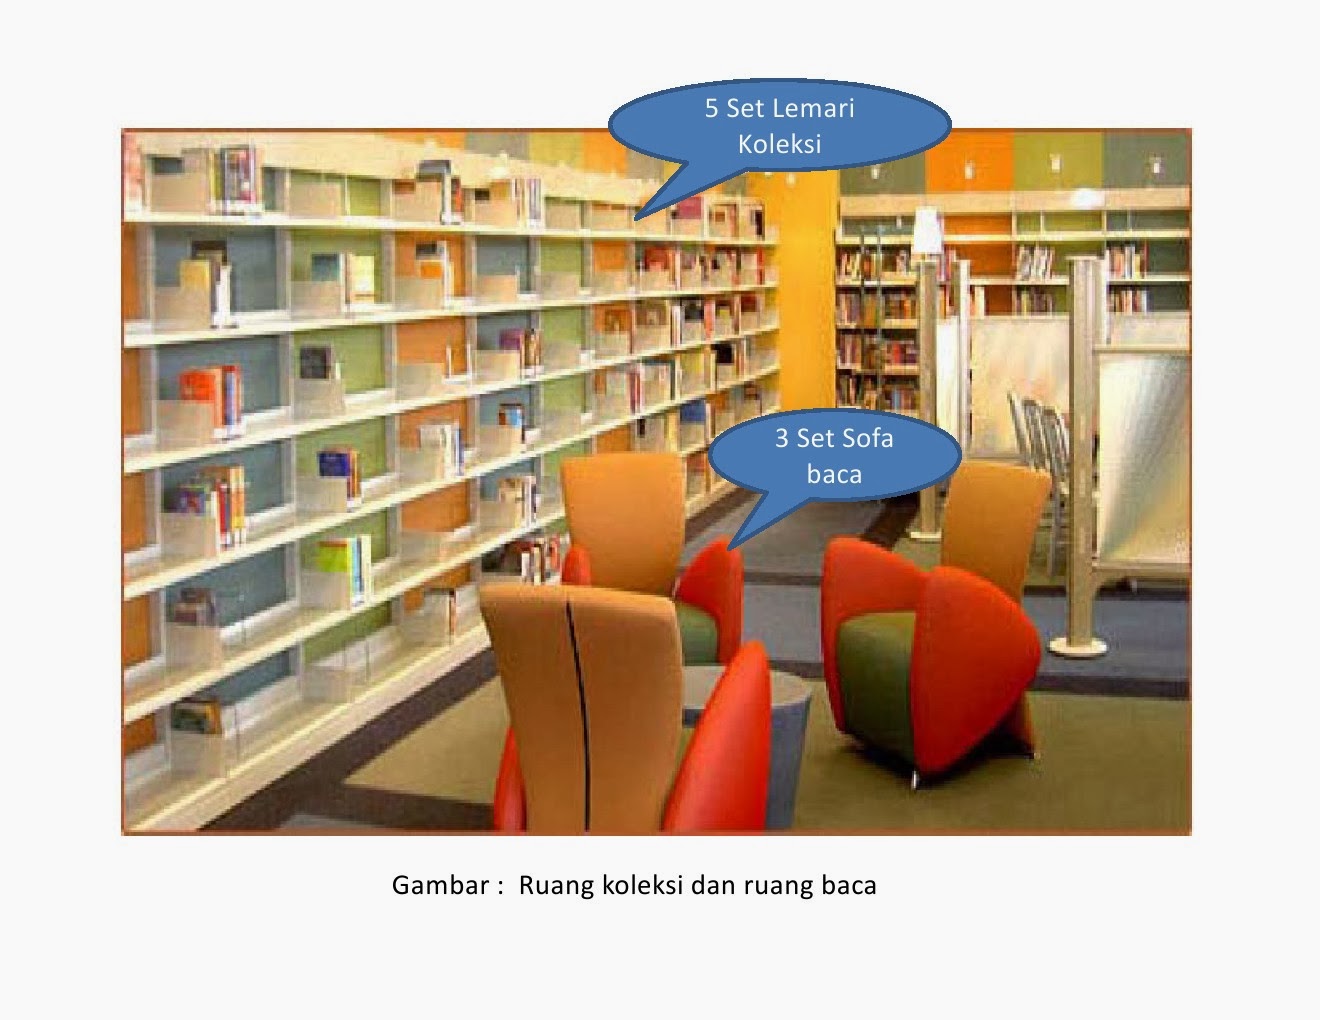 Rancangan Tata Ruang  Perpustakaan  Polikant Perpustakaan  